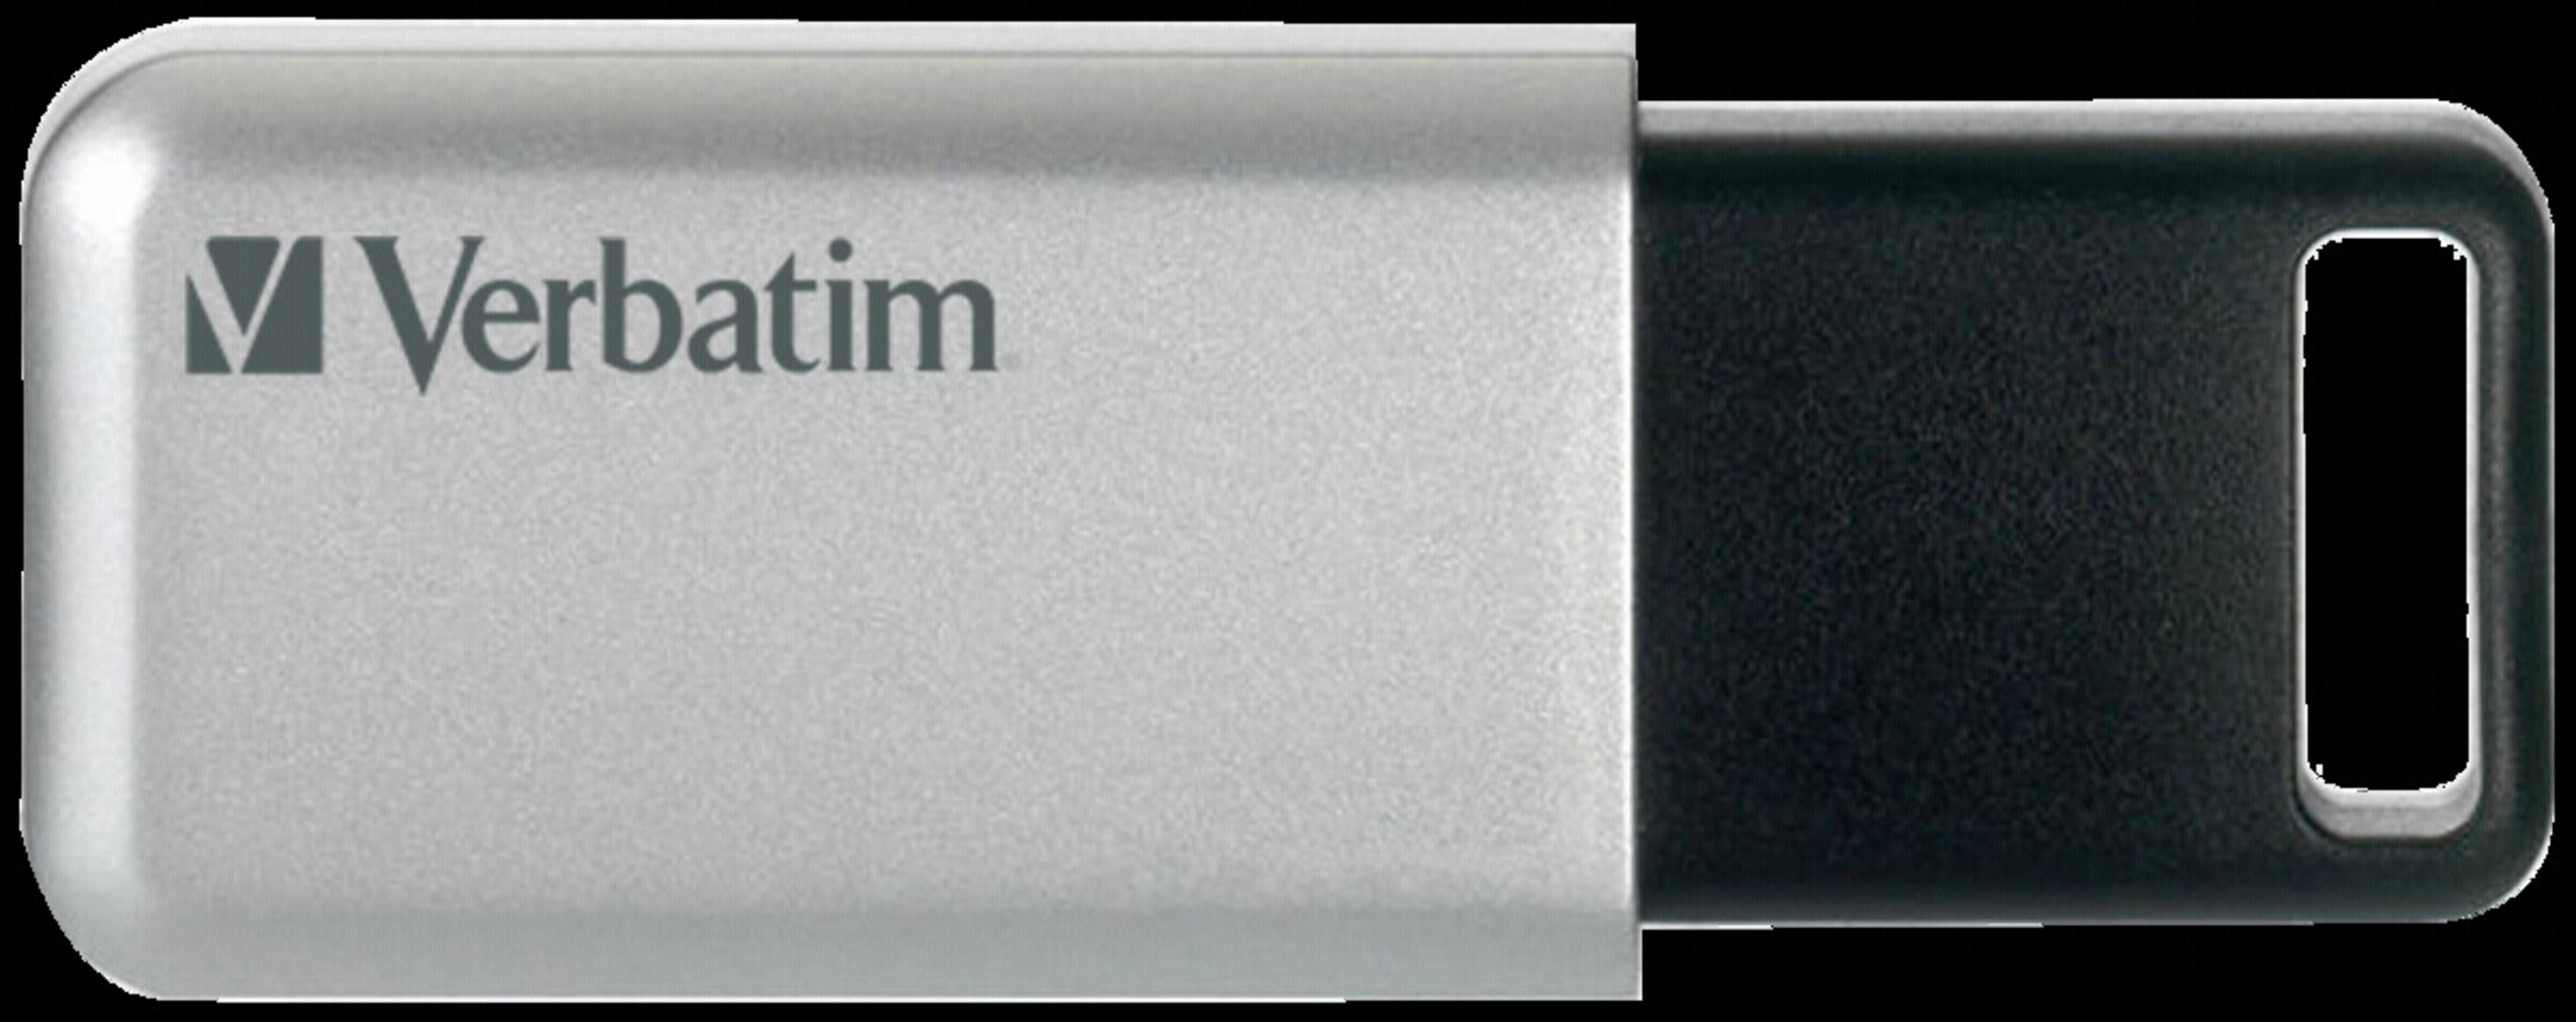 VERBATIM 98665 32GB SECURE PRO USB-Stick (Silber/Schwarz, 3.0 USB GB) 32